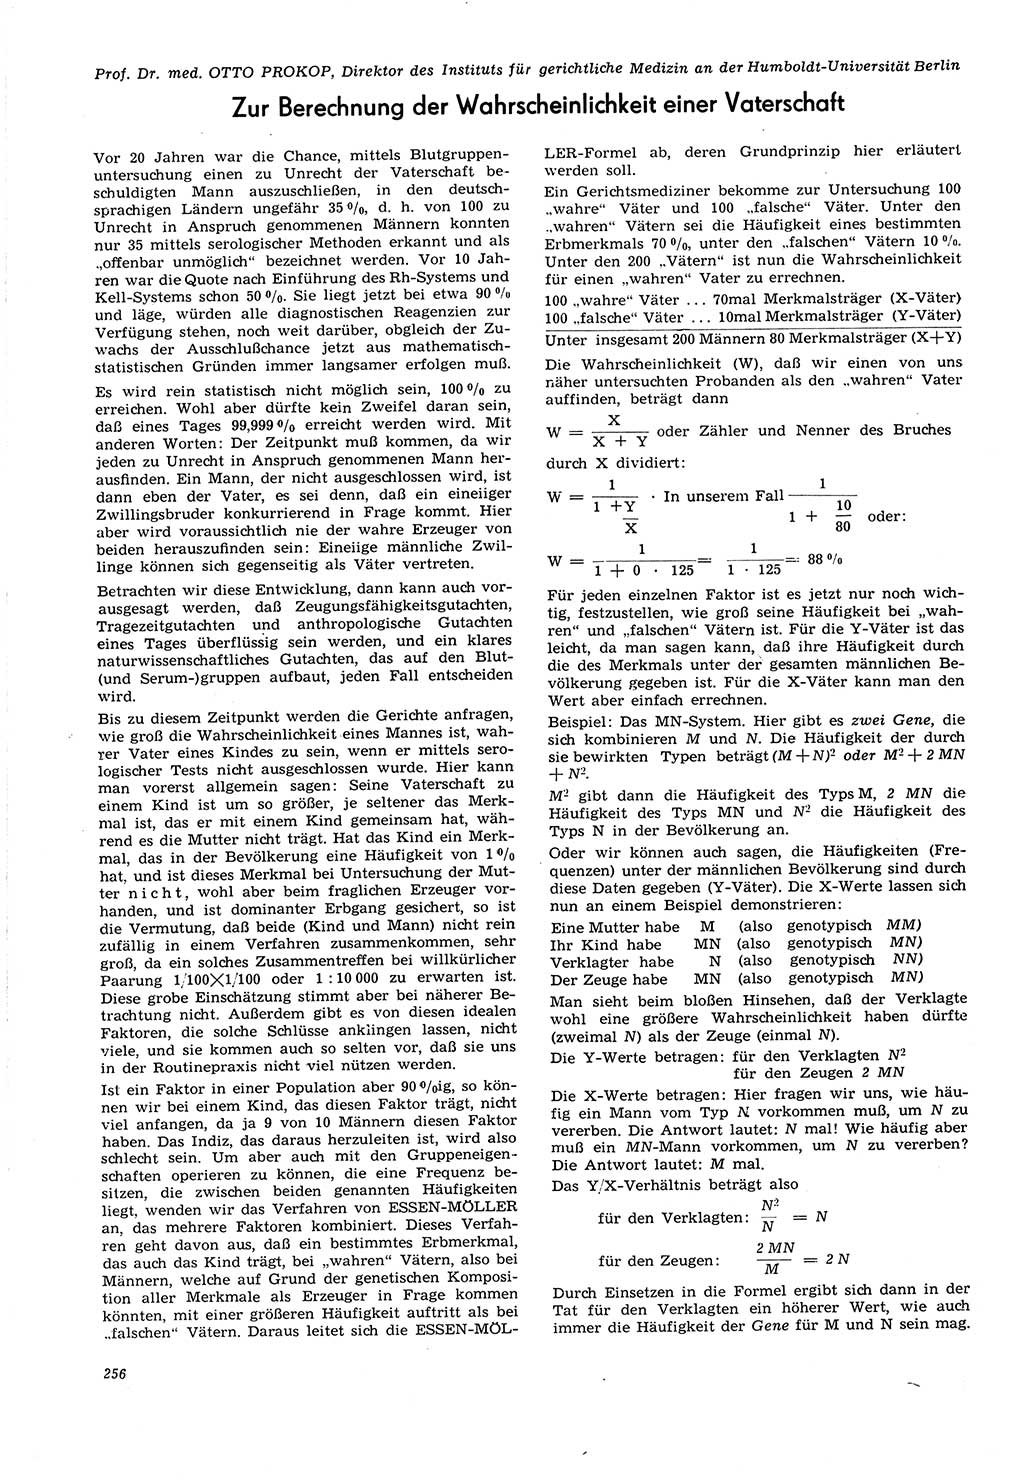 Neue Justiz (NJ), Zeitschrift für Recht und Rechtswissenschaft [Deutsche Demokratische Republik (DDR)], 21. Jahrgang 1967, Seite 256 (NJ DDR 1967, S. 256)